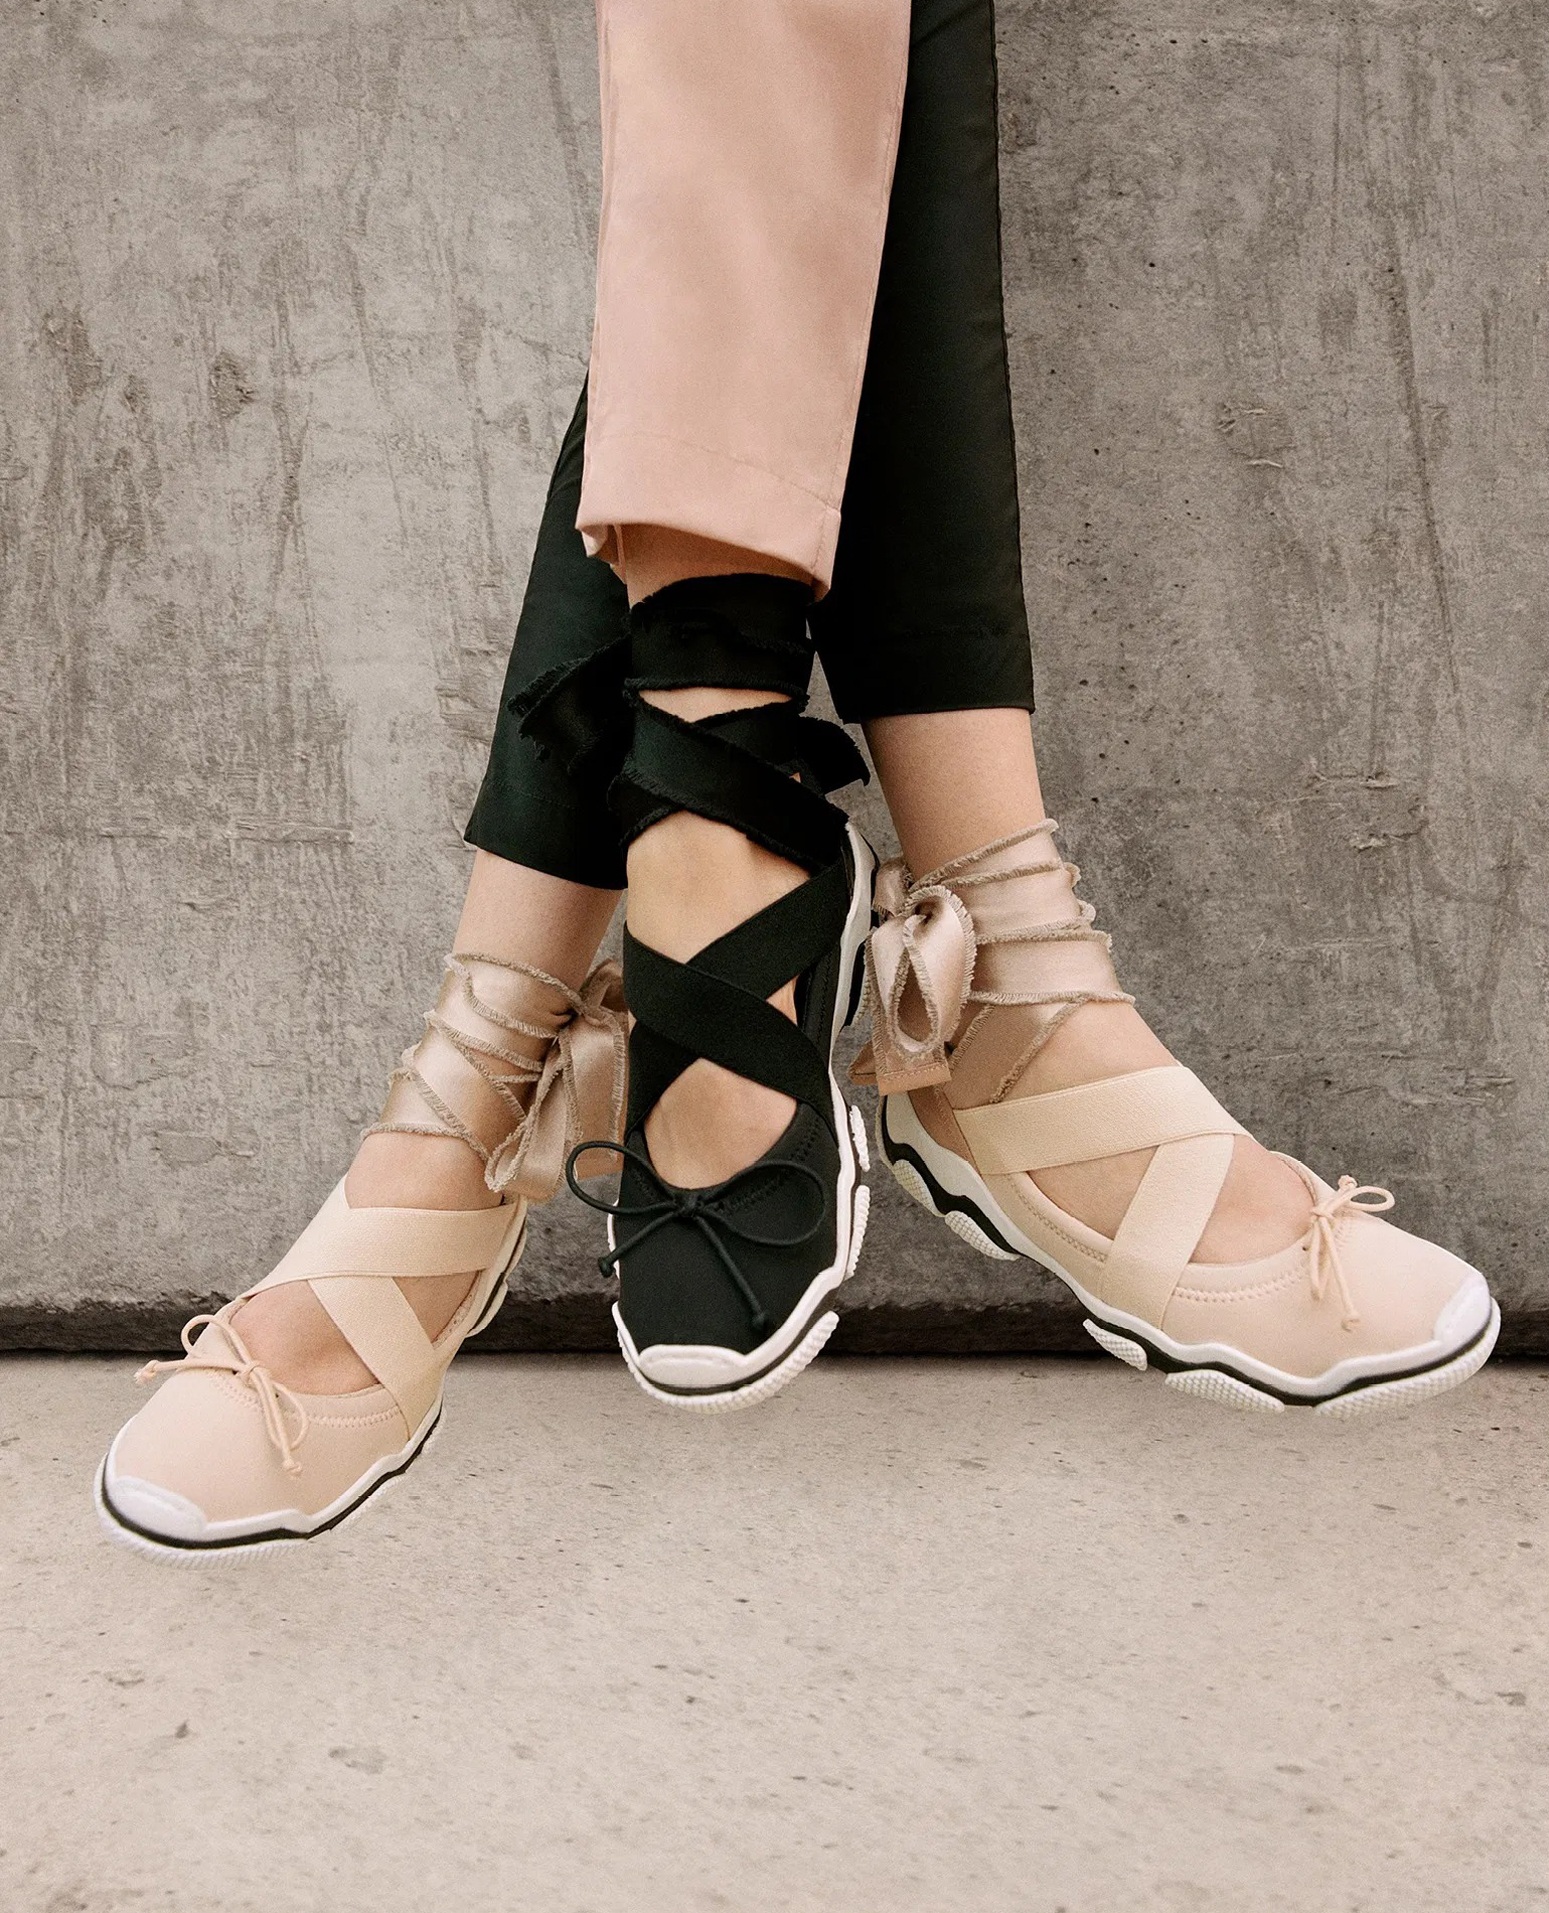 Giày ballet sneakers gây ấn tượng bởi phần đế dày dặn, nhiều hình khối và hoa văn cá tính, kết hợp các chi tiết mềm mại như dây ruy băng, chiếc nơ, khóa gài, vải satin… tạo nên sự tương phản độc đáo trong cùng tổng thể thiết kế (Ảnh: RedValentino).